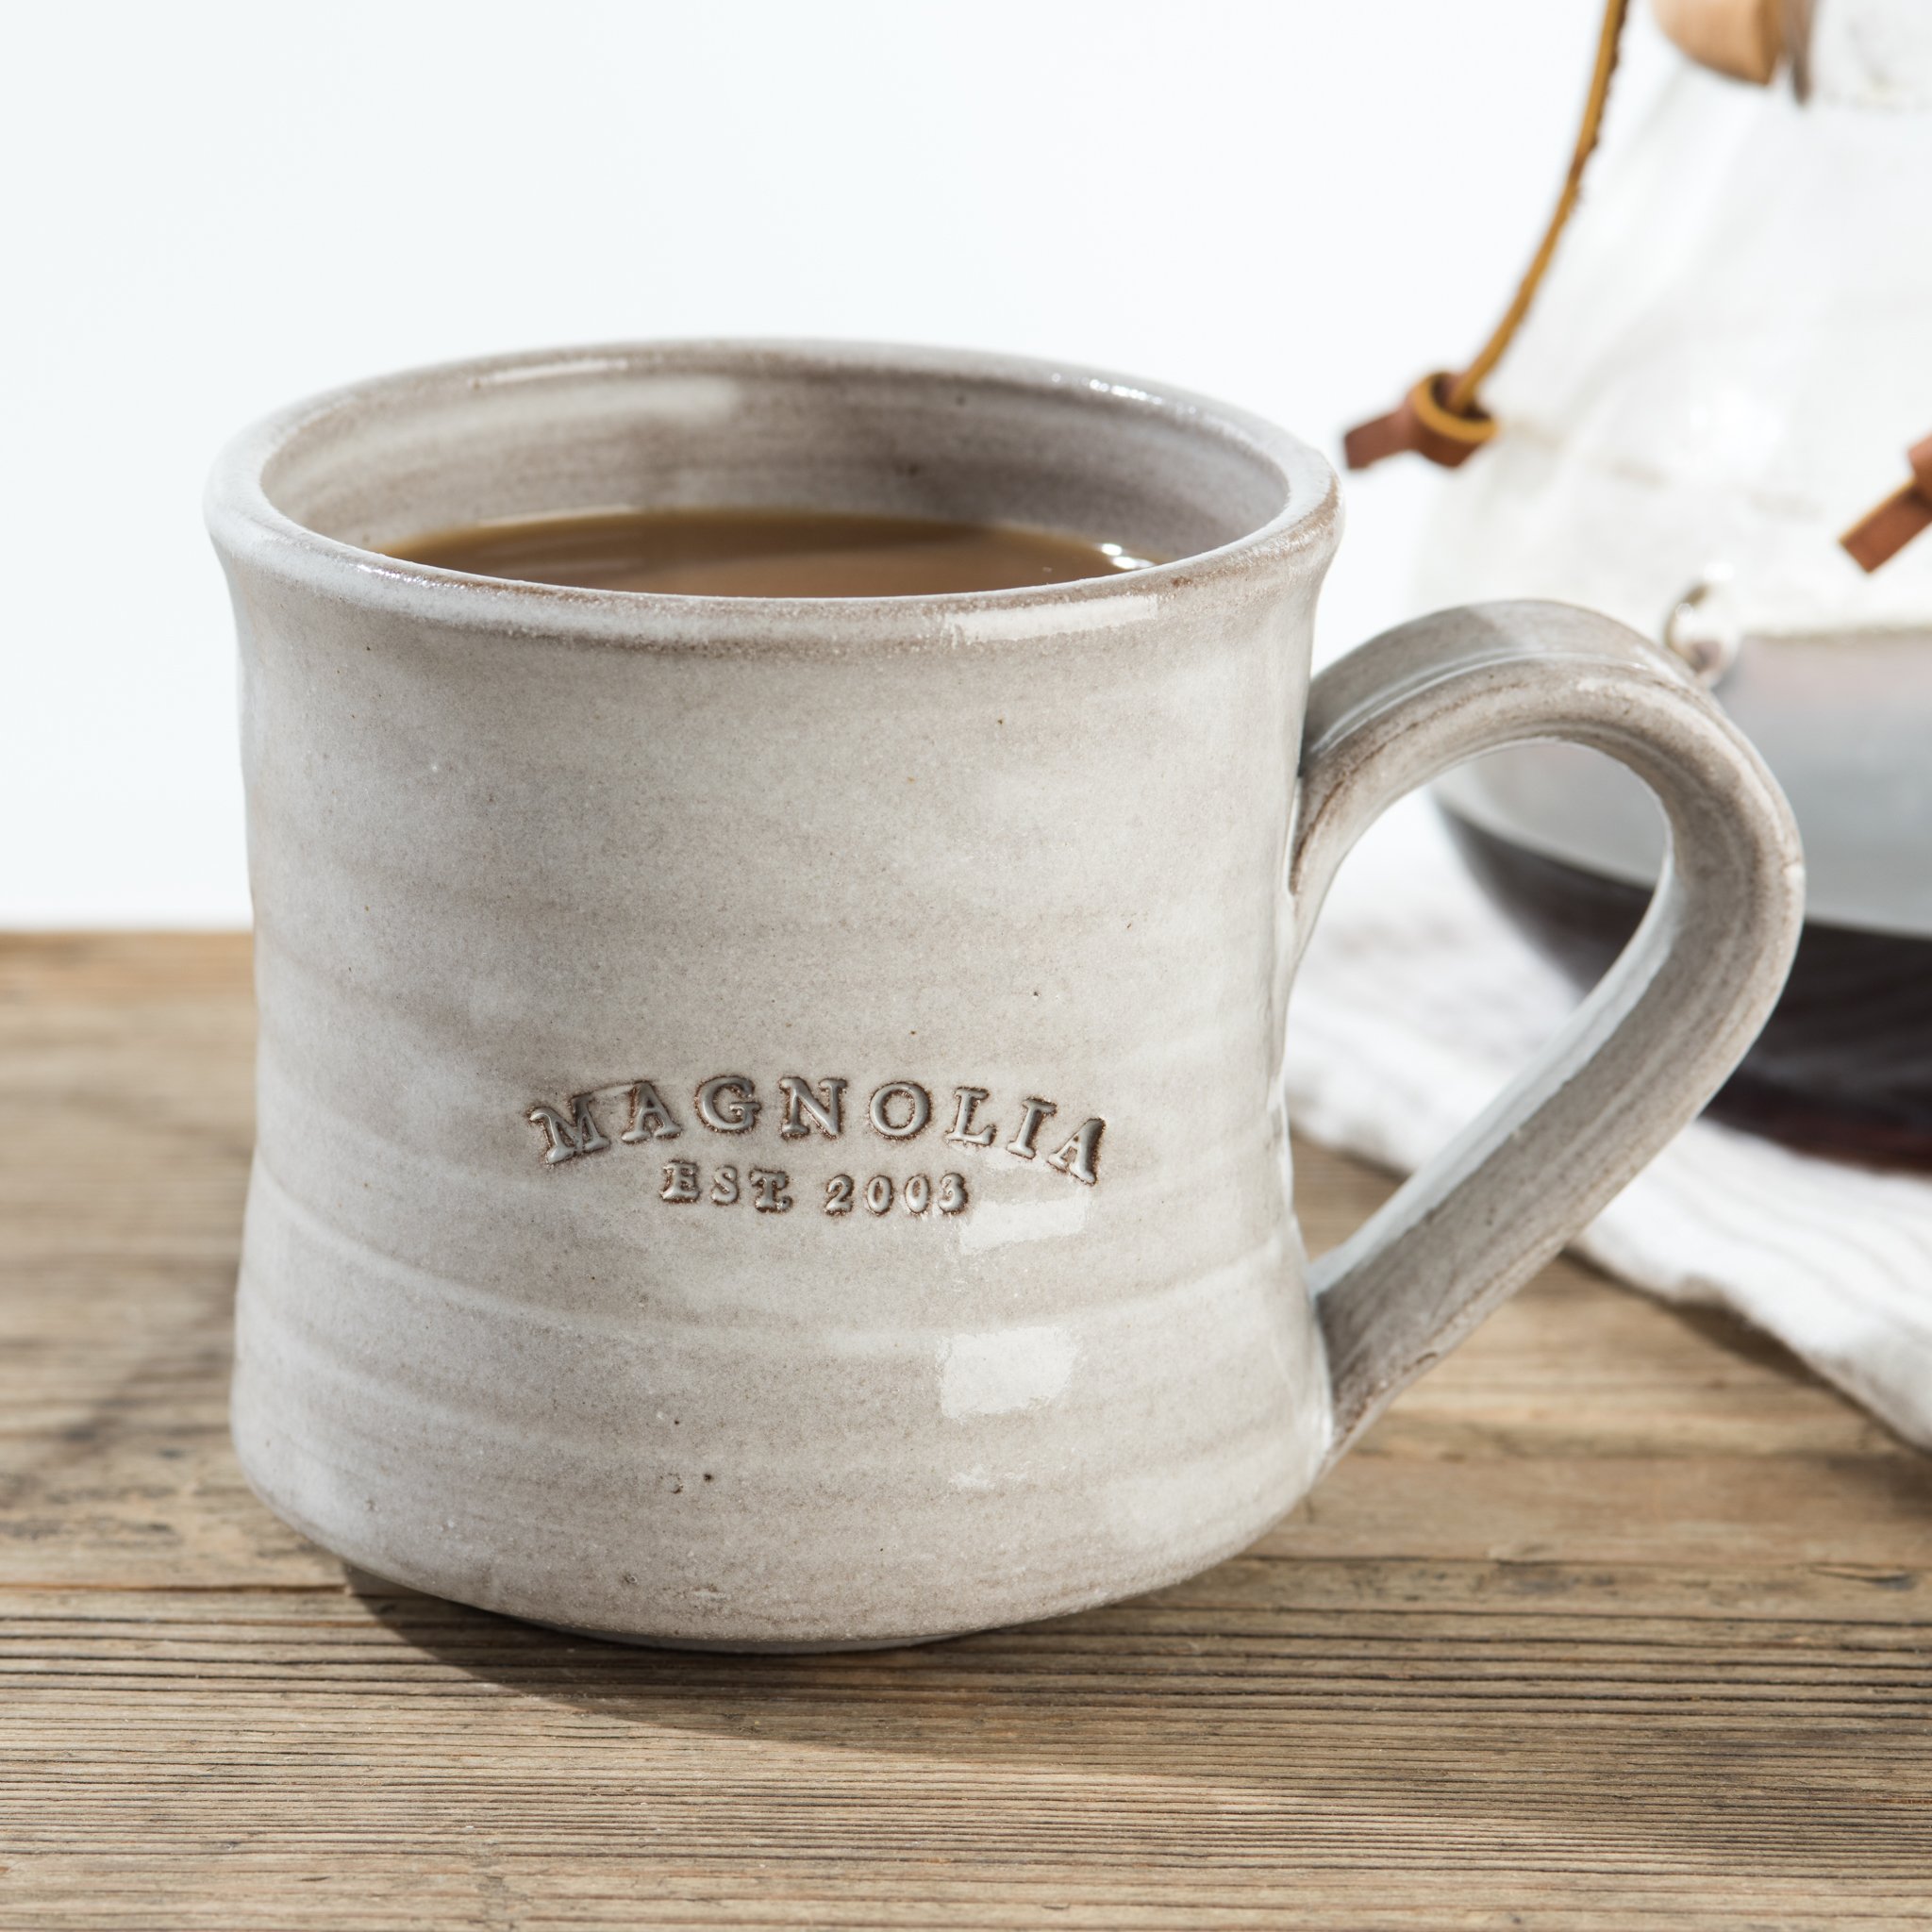 Stamped Mug – 8 oz. – Southern Highland Craft Guild